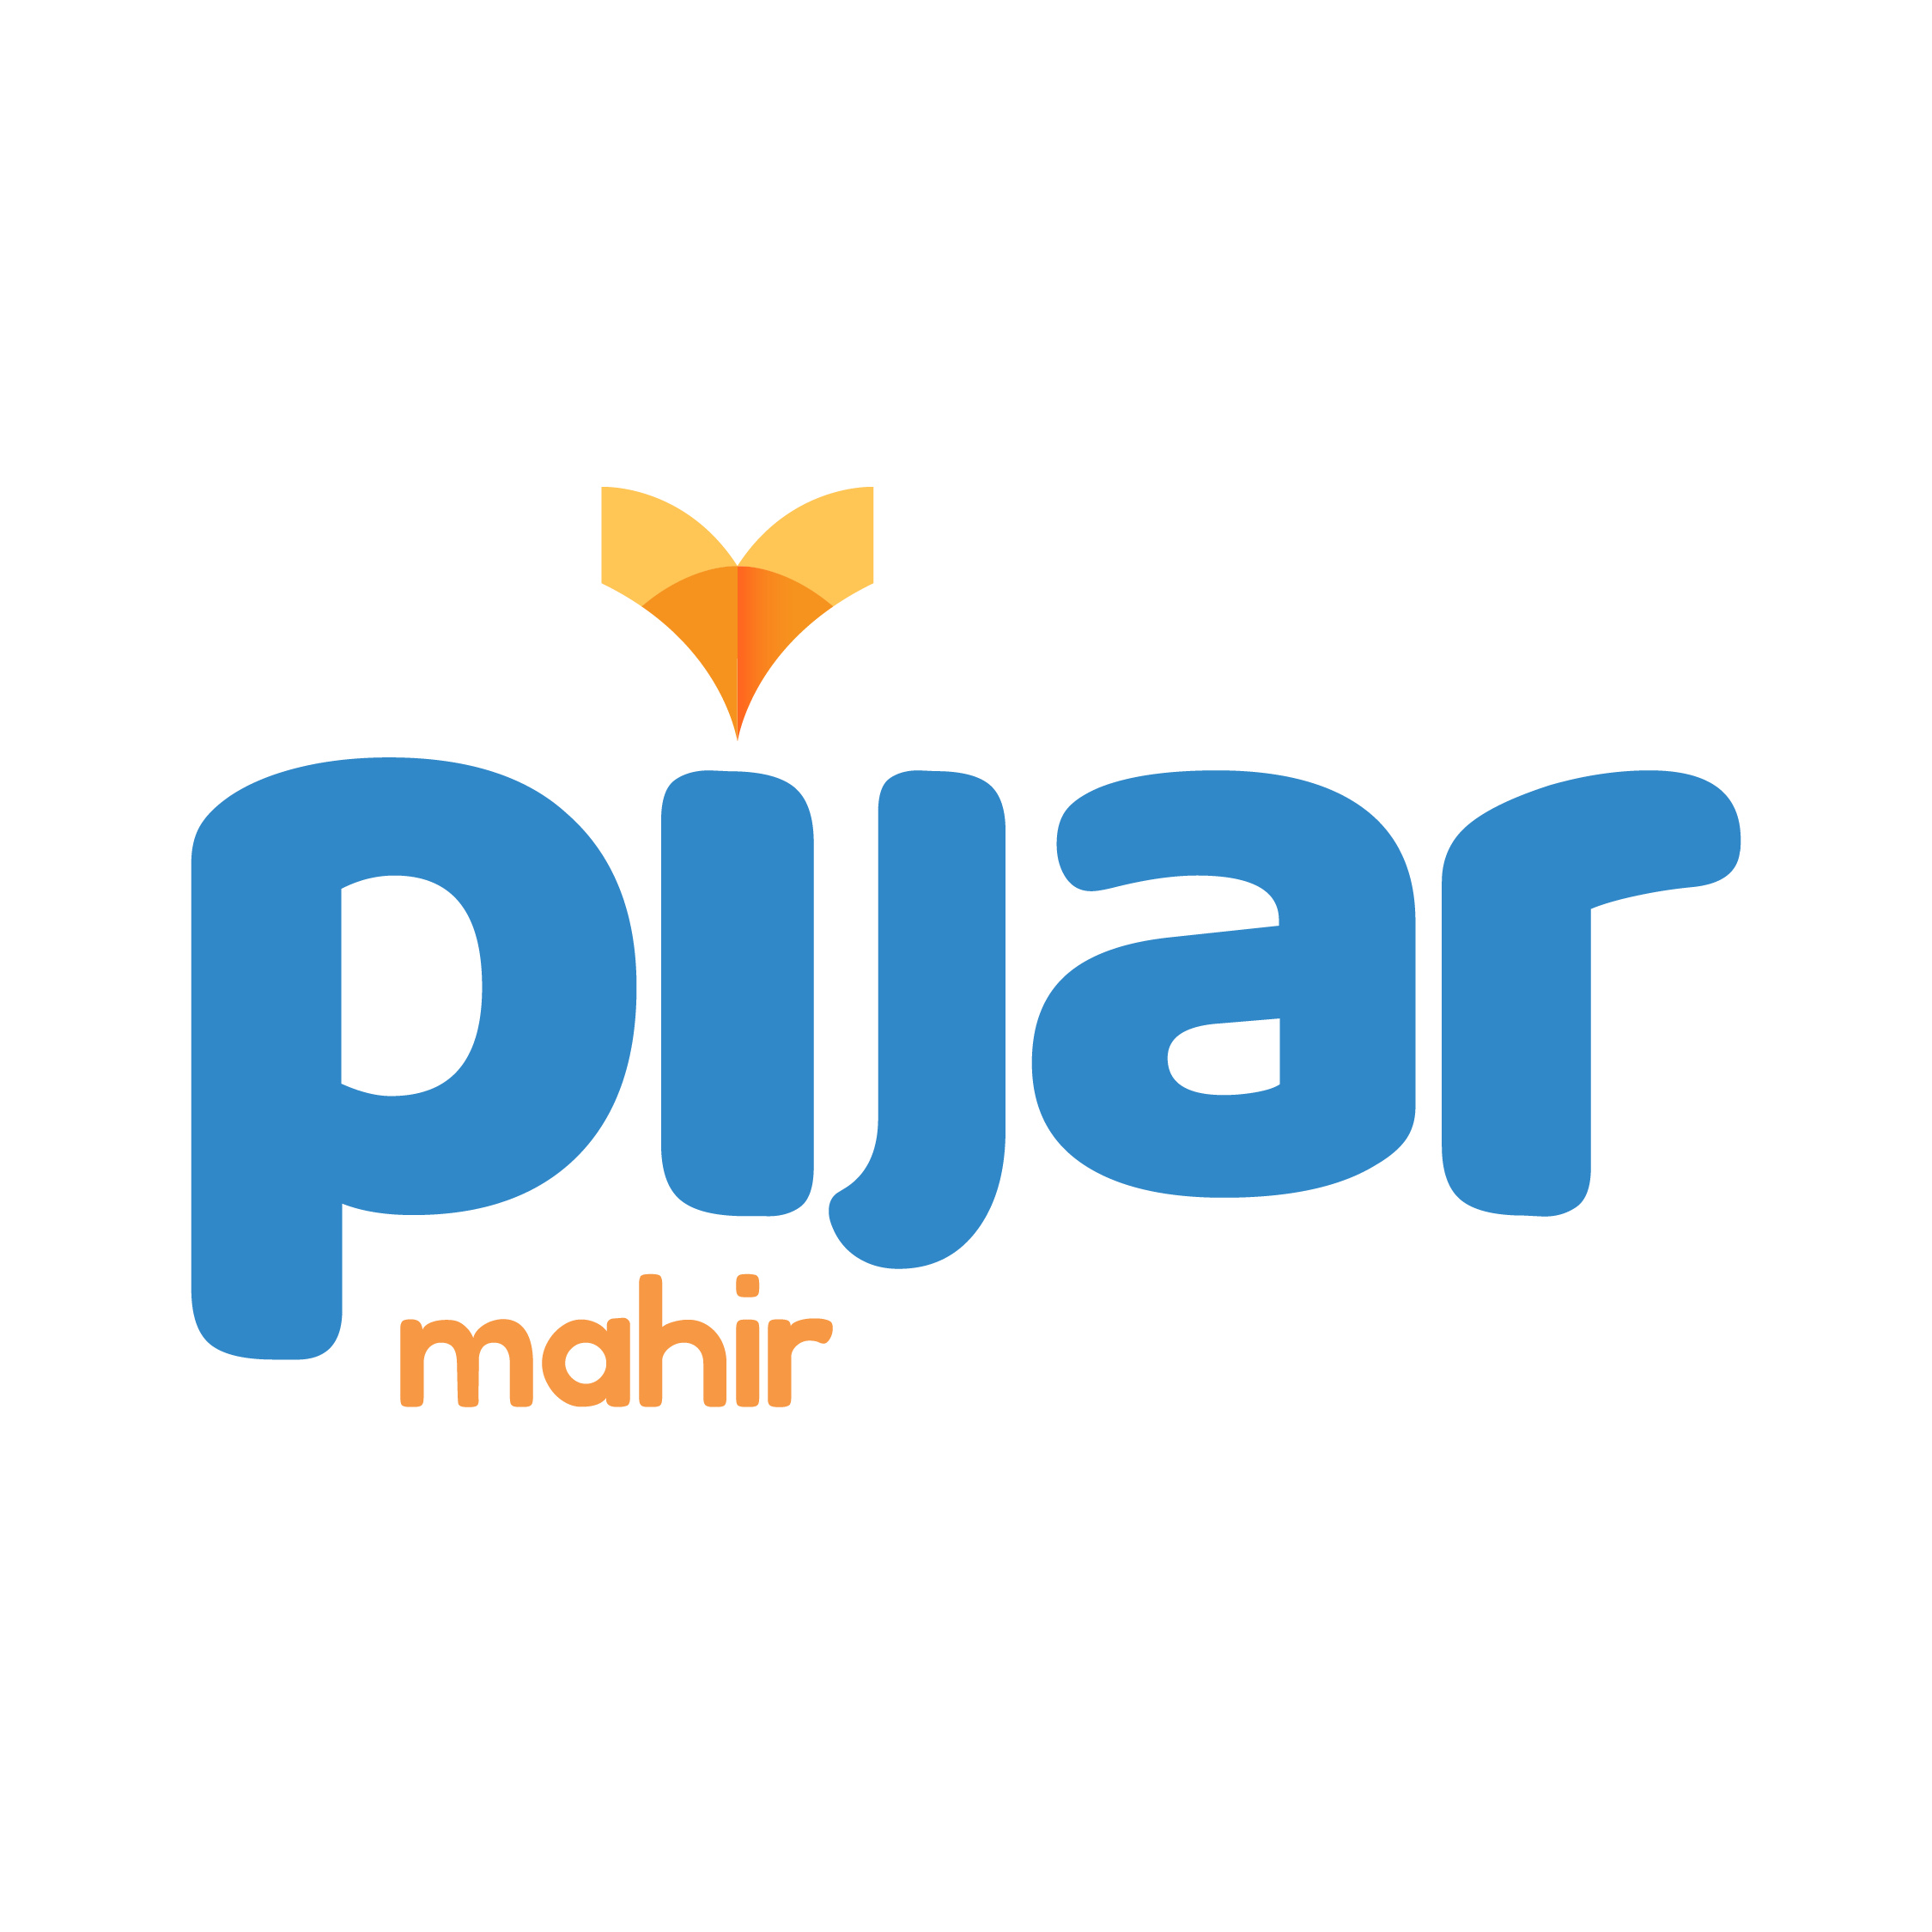 Pijar Mahir Official Store